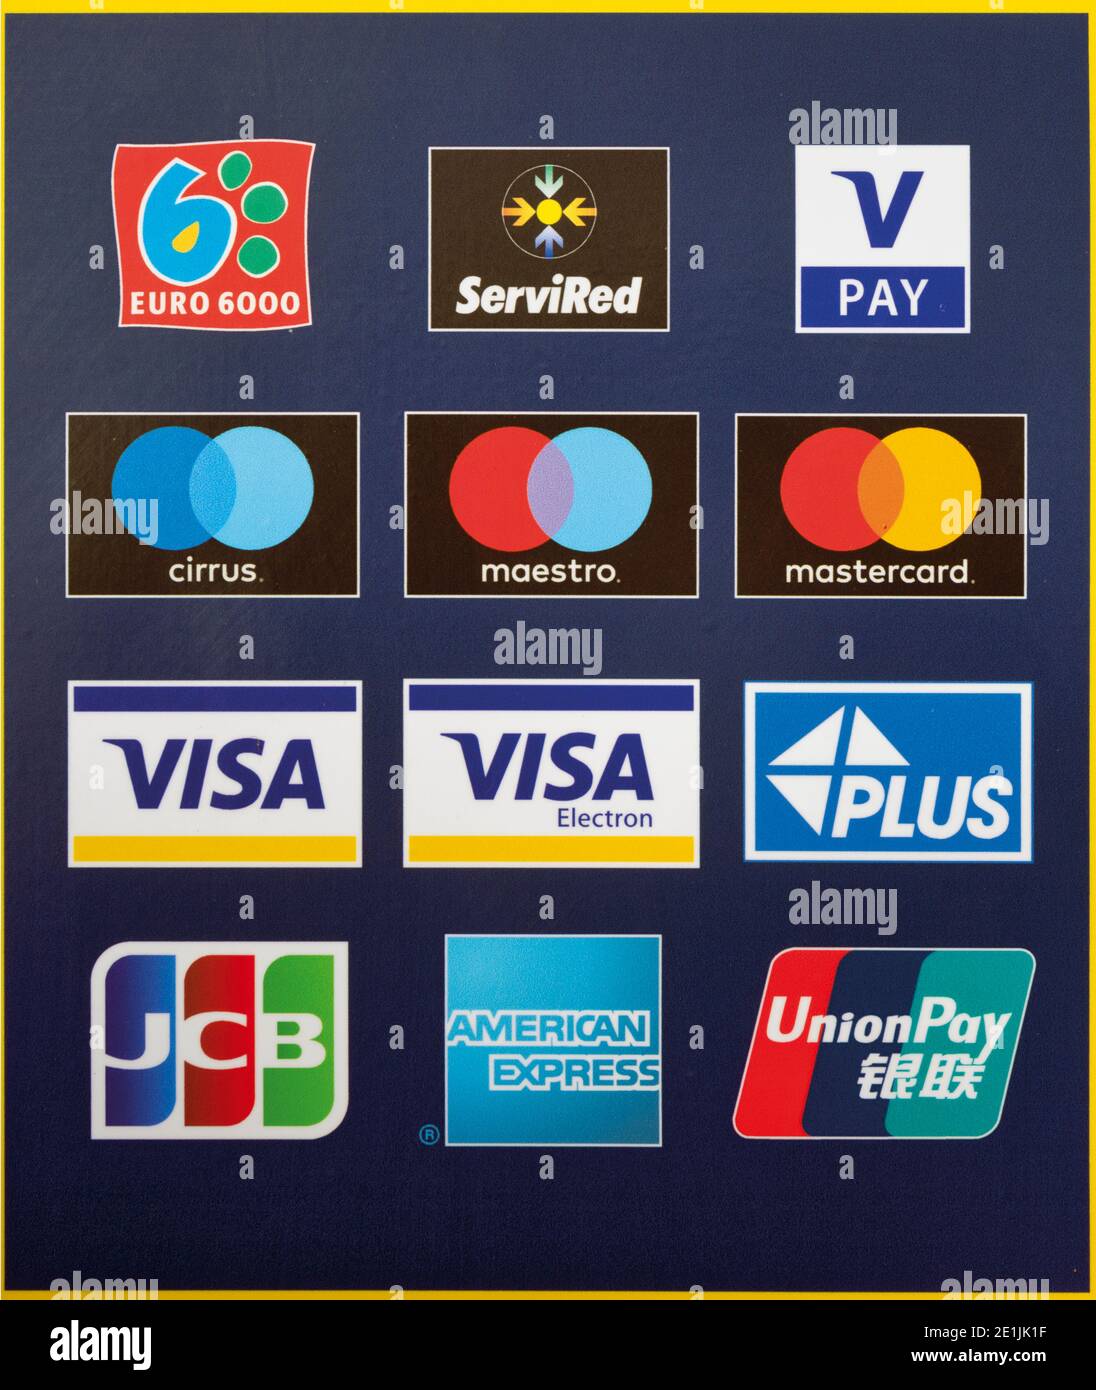 Logos verschiedener Kreditkartenunternehmen auf der Vorderseite eines Geldautomaten in Spanien. Beispiele kommerziell grafischer Kunst Stockfoto